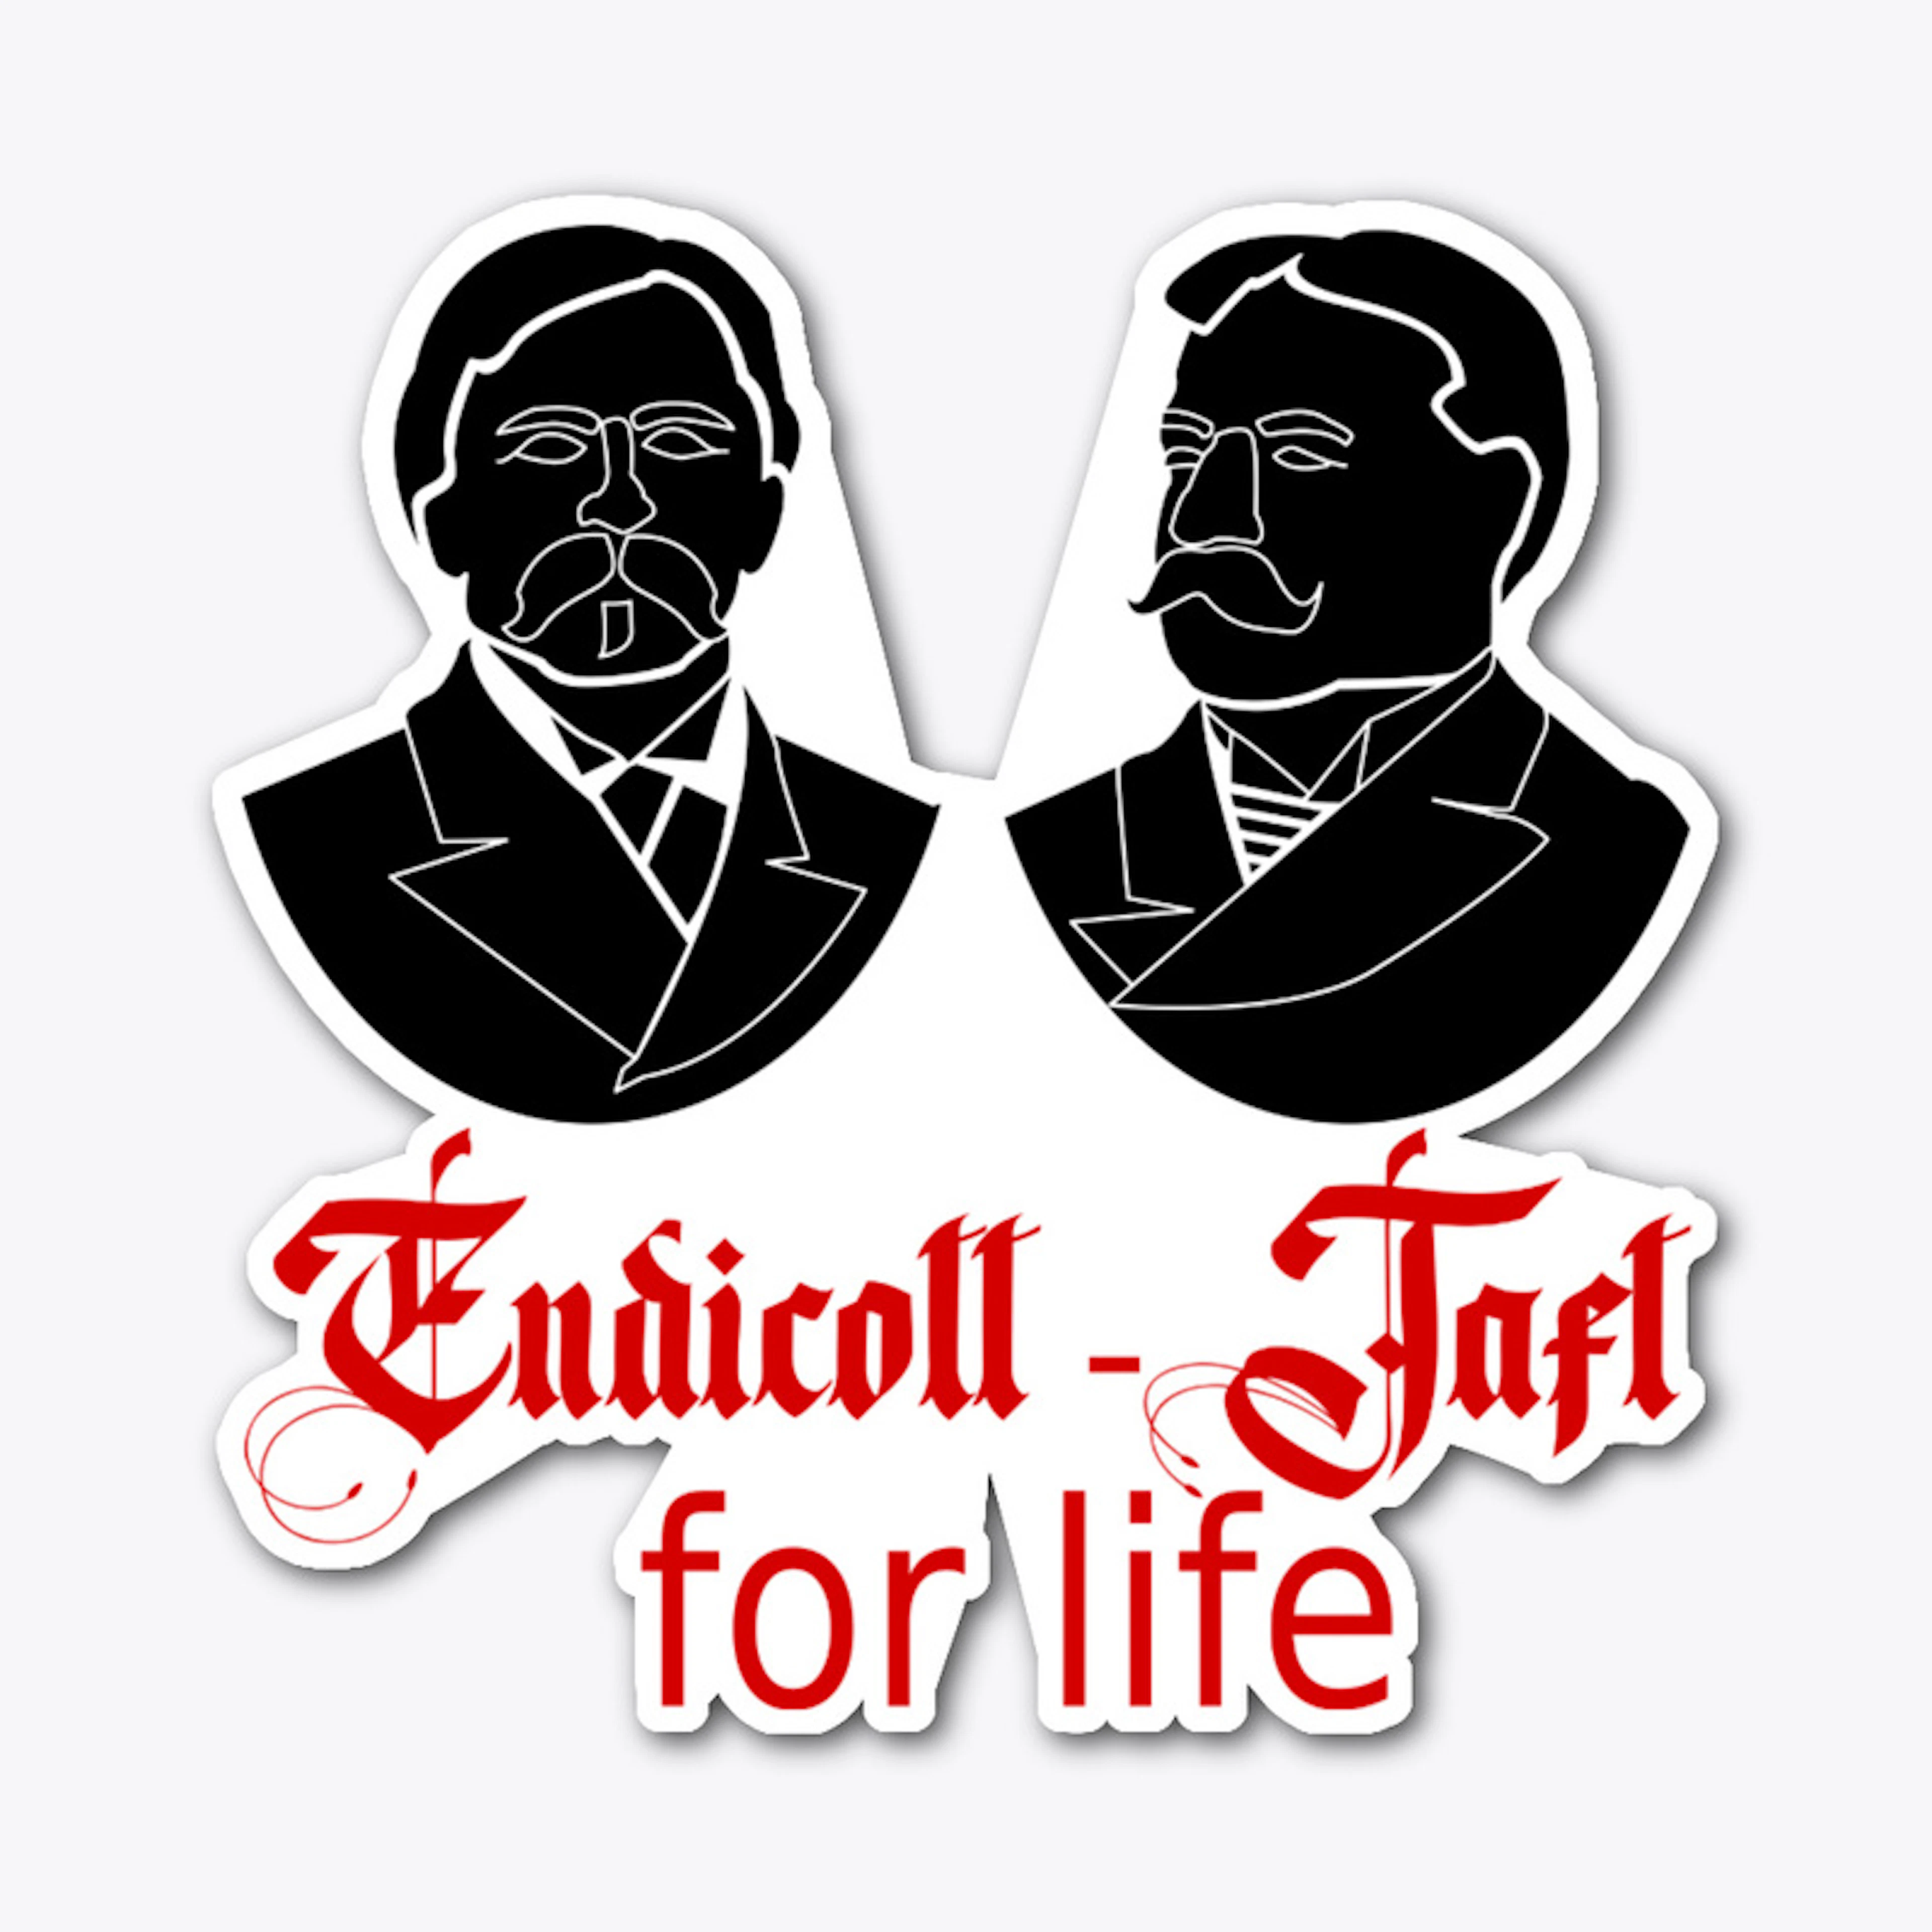 Endicott Taft 4 Life